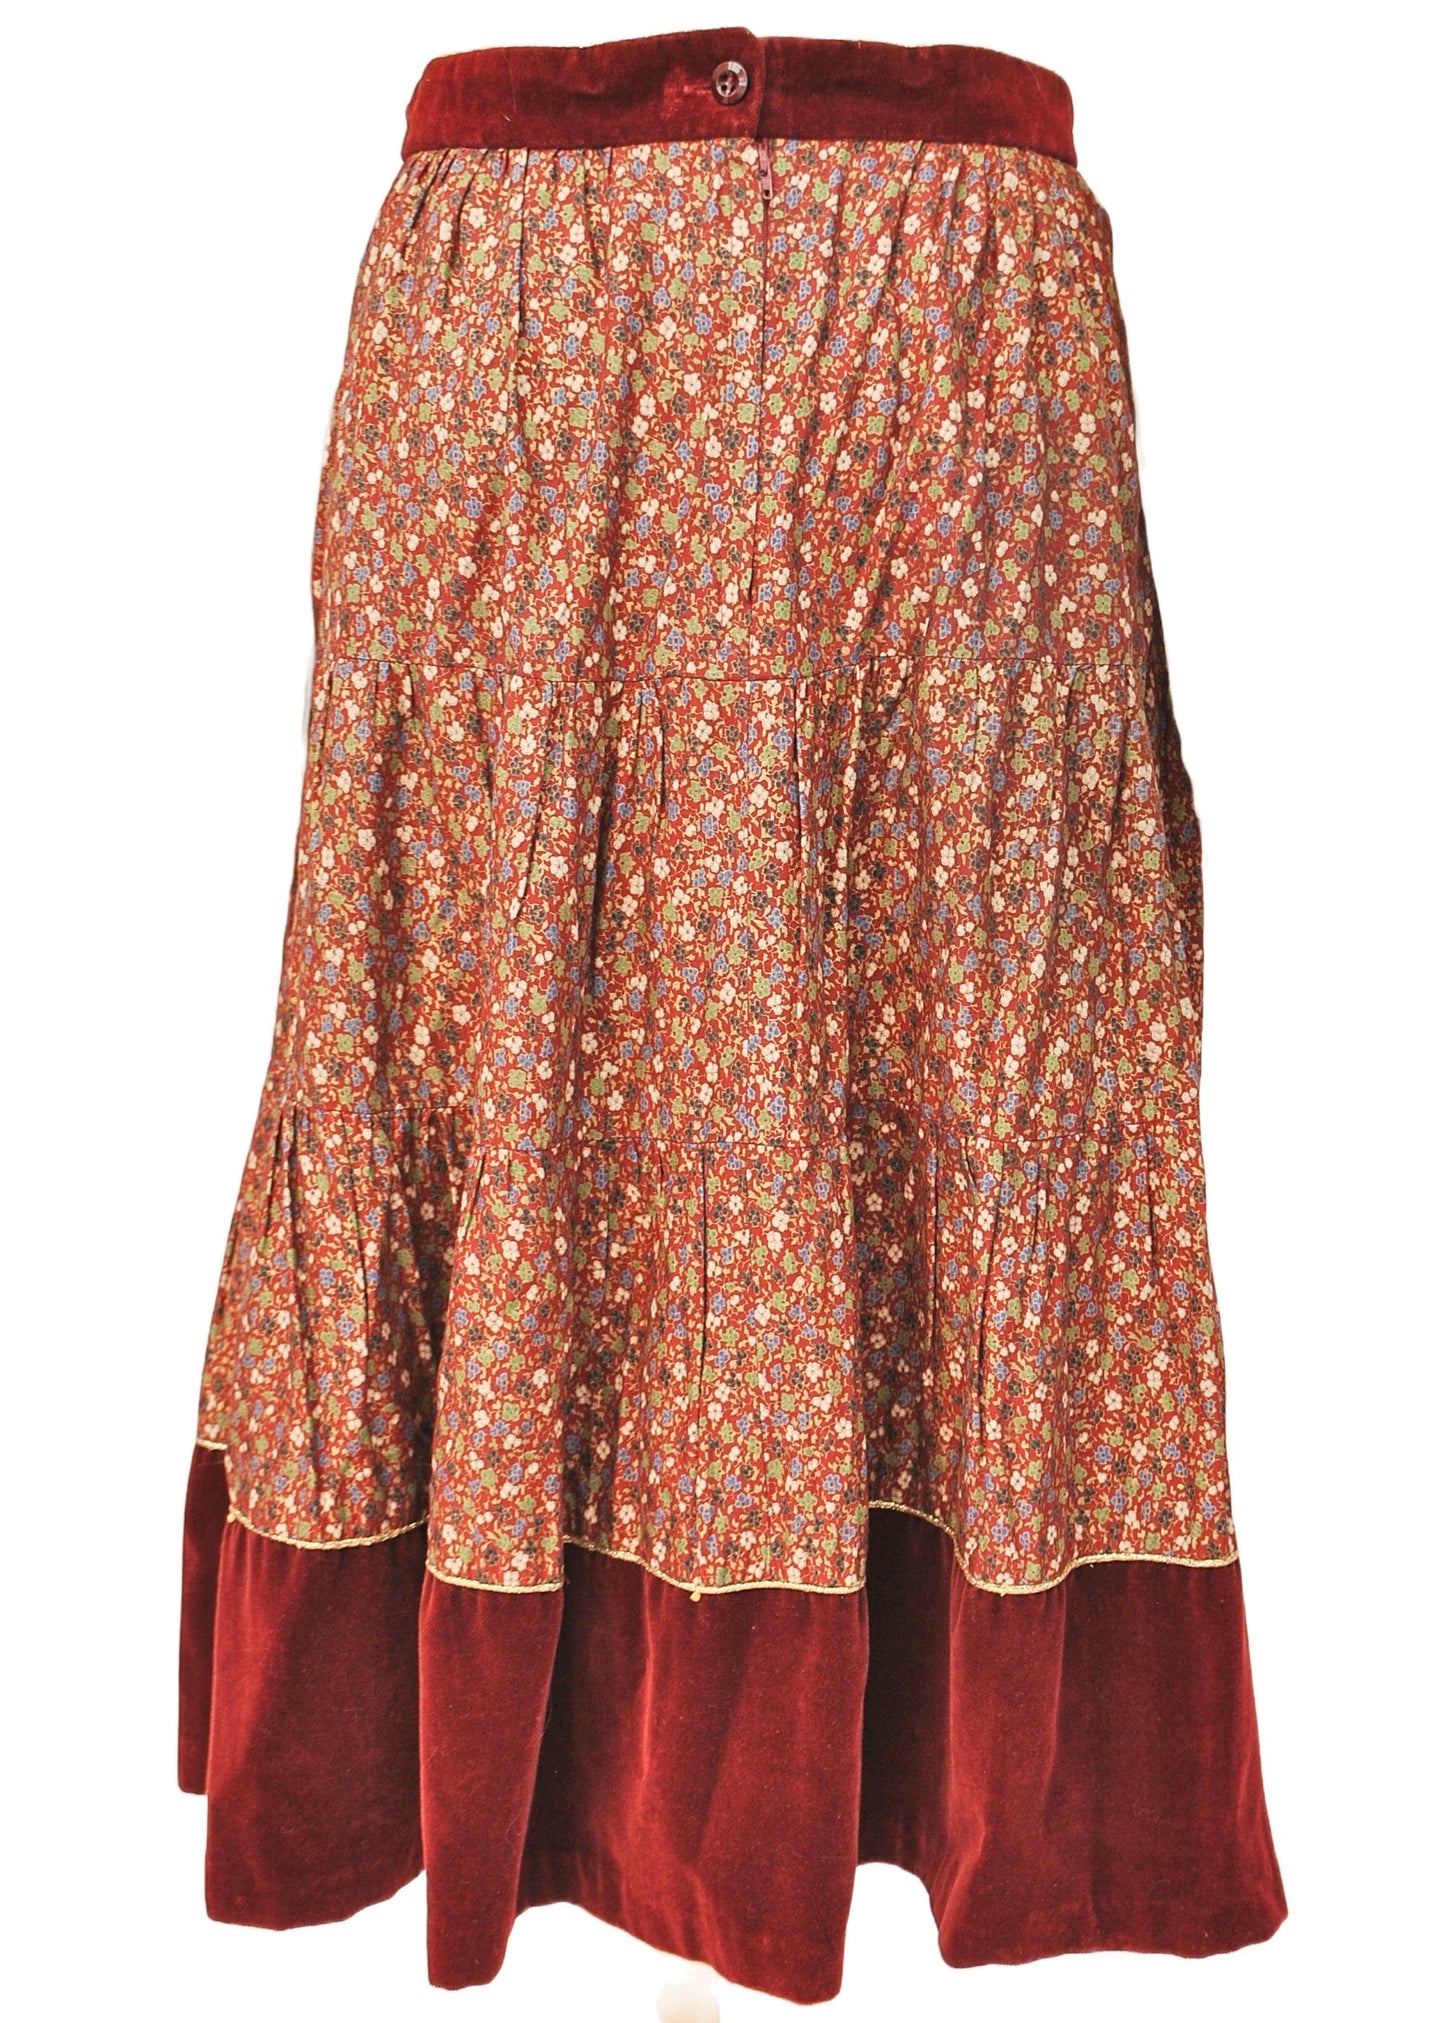 Vintage 70s Burgundy Ditsy Floral Skirt and Vest Set • Marion Donaldson